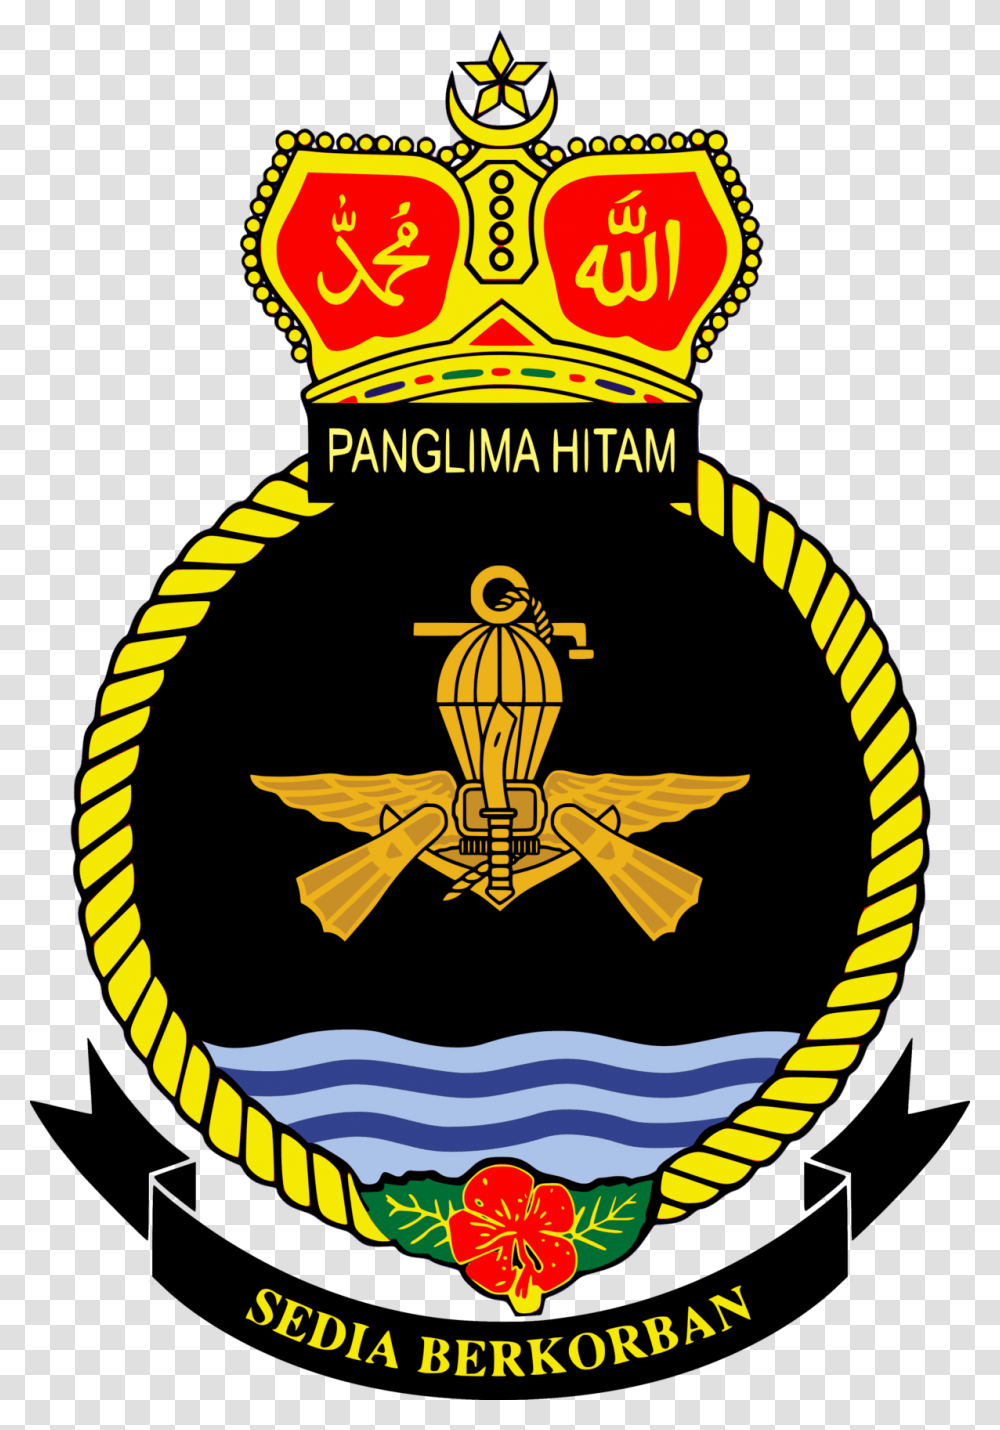 Royal Malaysian Navy Logo, Trademark, Emblem, Poster Transparent Png